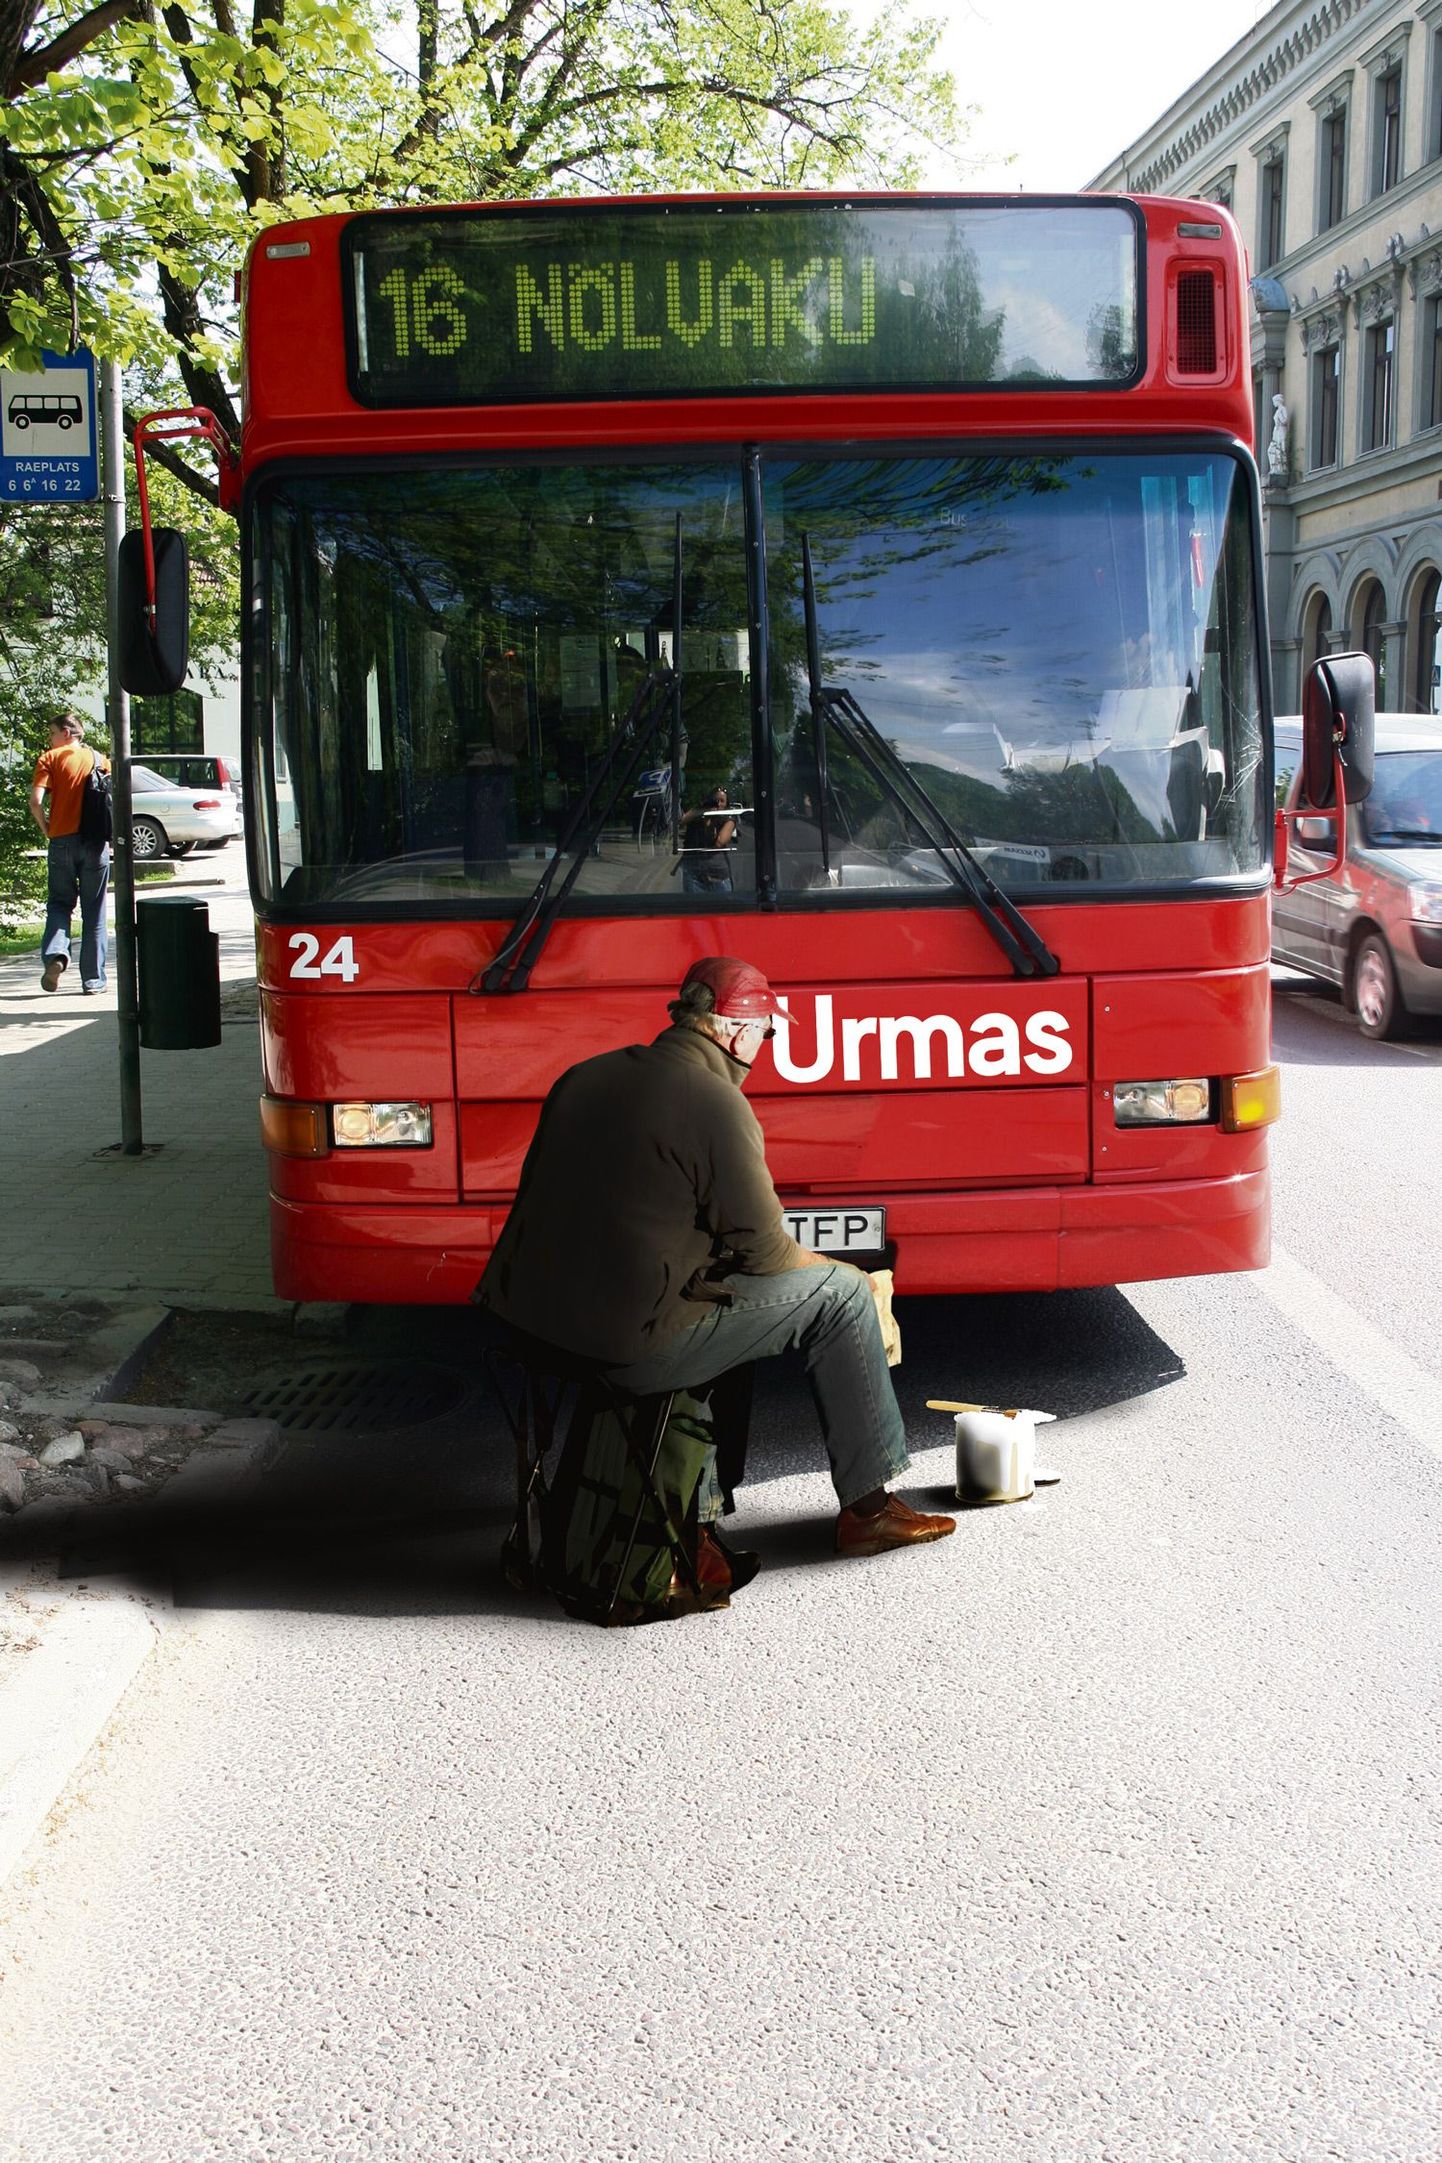 Esimene buss sai nime juba eile, kui bussipargi töötaja maalis raeplatsi peatuses sõiduki esiotsa praeguse linnapea eesnime. Bussi võib täna juba liinil näha.